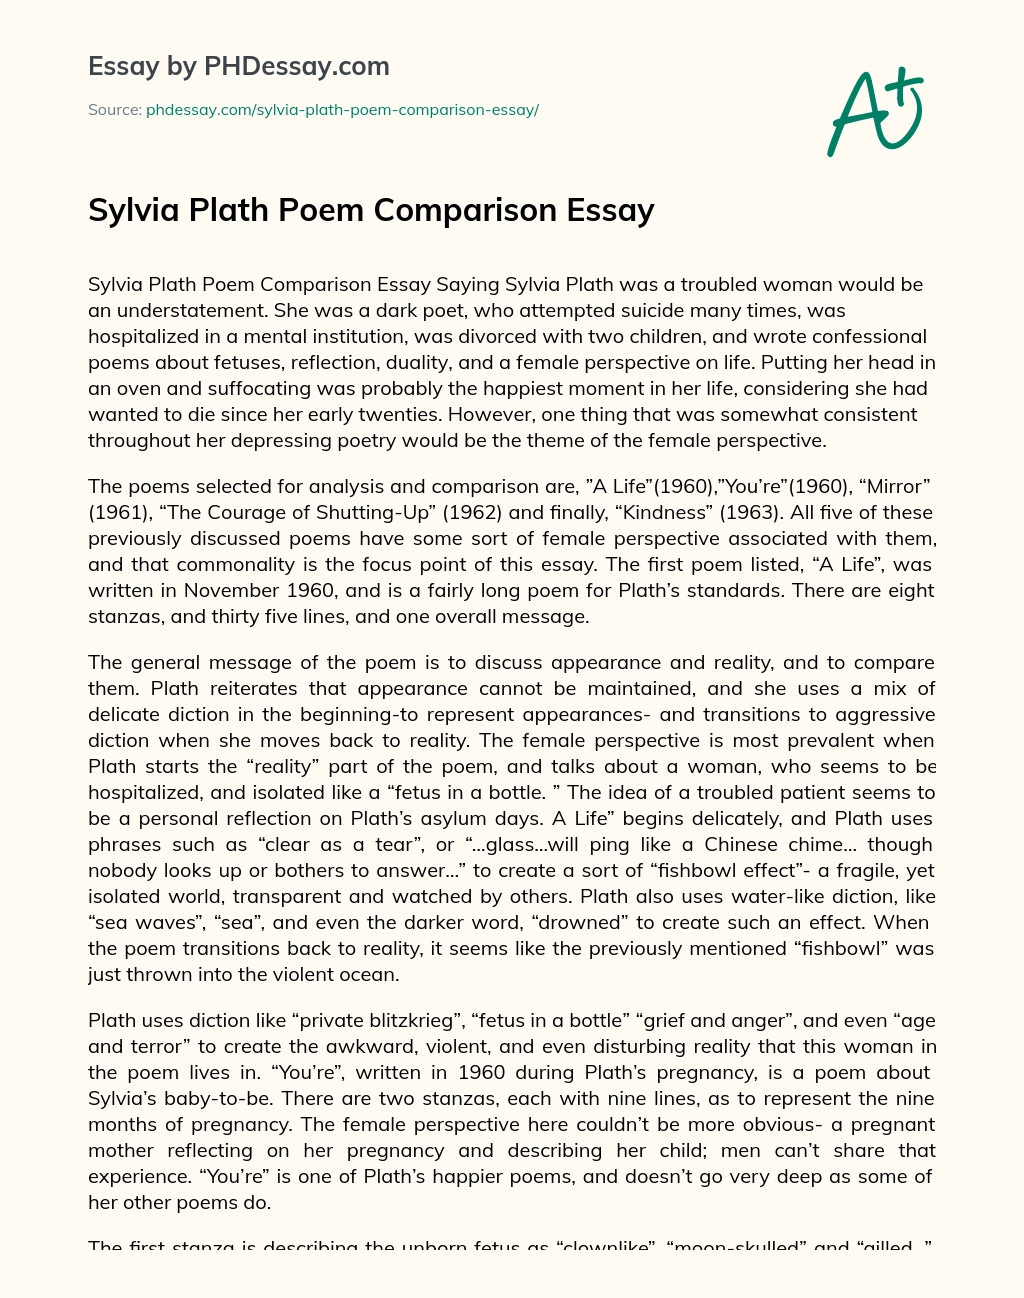 Sylvia Plath Poem Comparison Essay essay